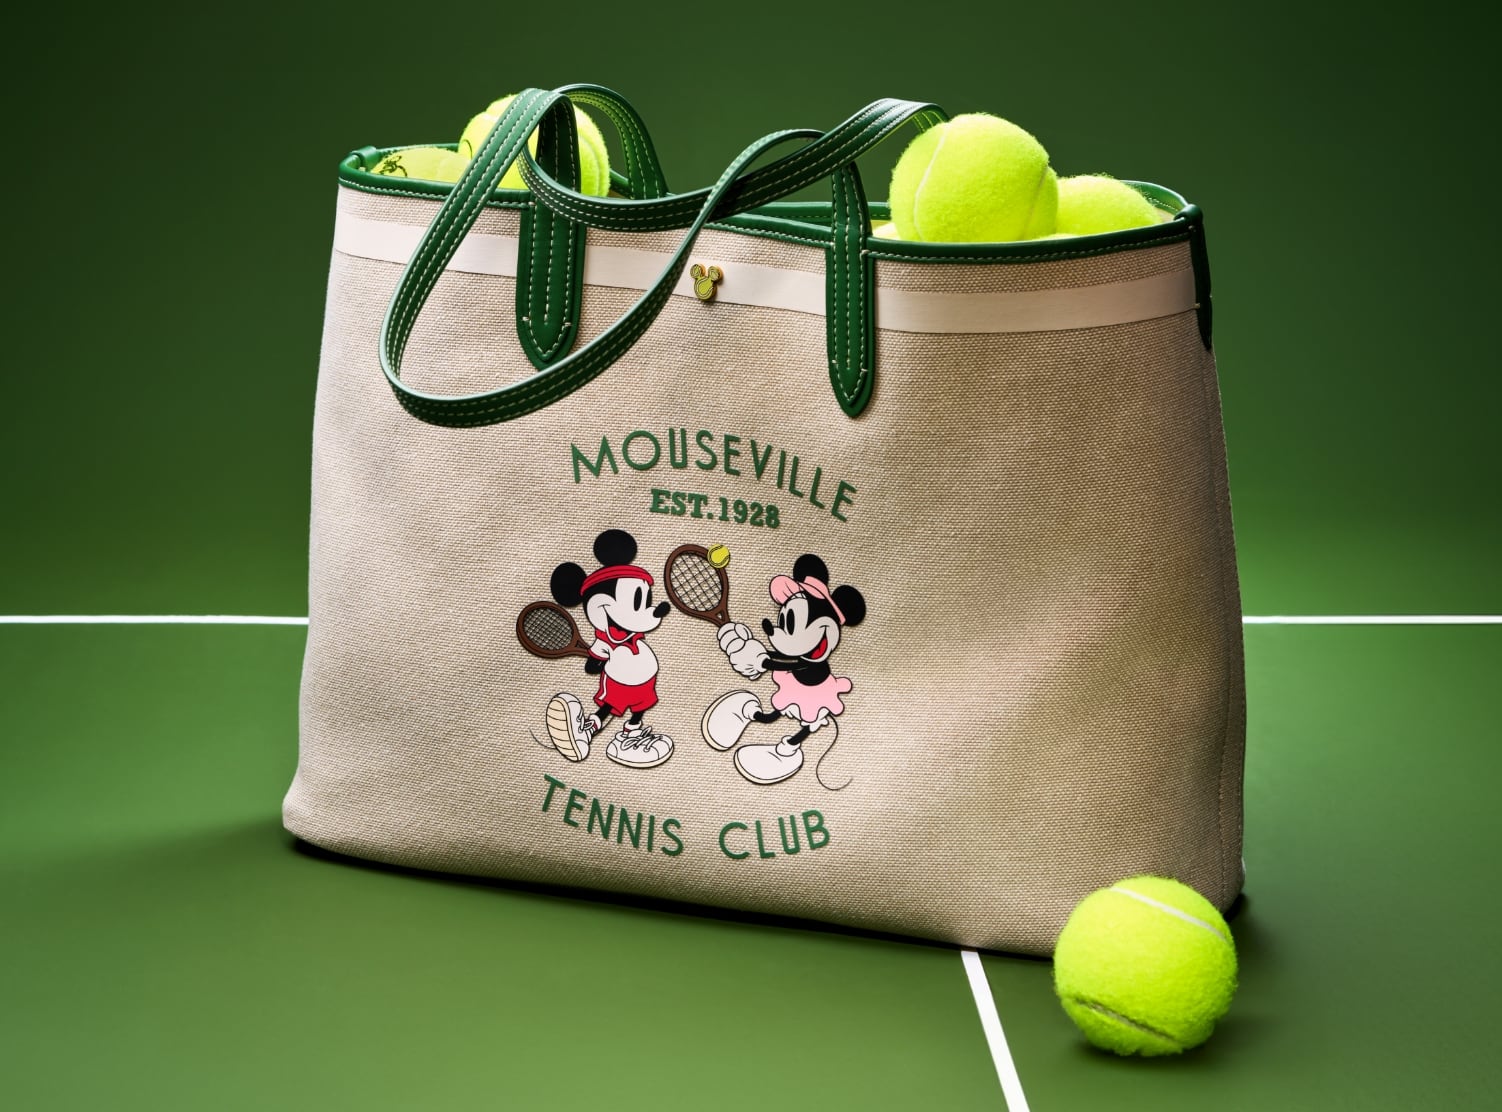 スペシャルエディションのミニクロスボディハンドバッグのクローズアップ画像。丸みのあるグリーンレザーのバッグには、ミッキーとミニーがテニスをしているスクリーンプリントのグラフィックがあしらわれています。